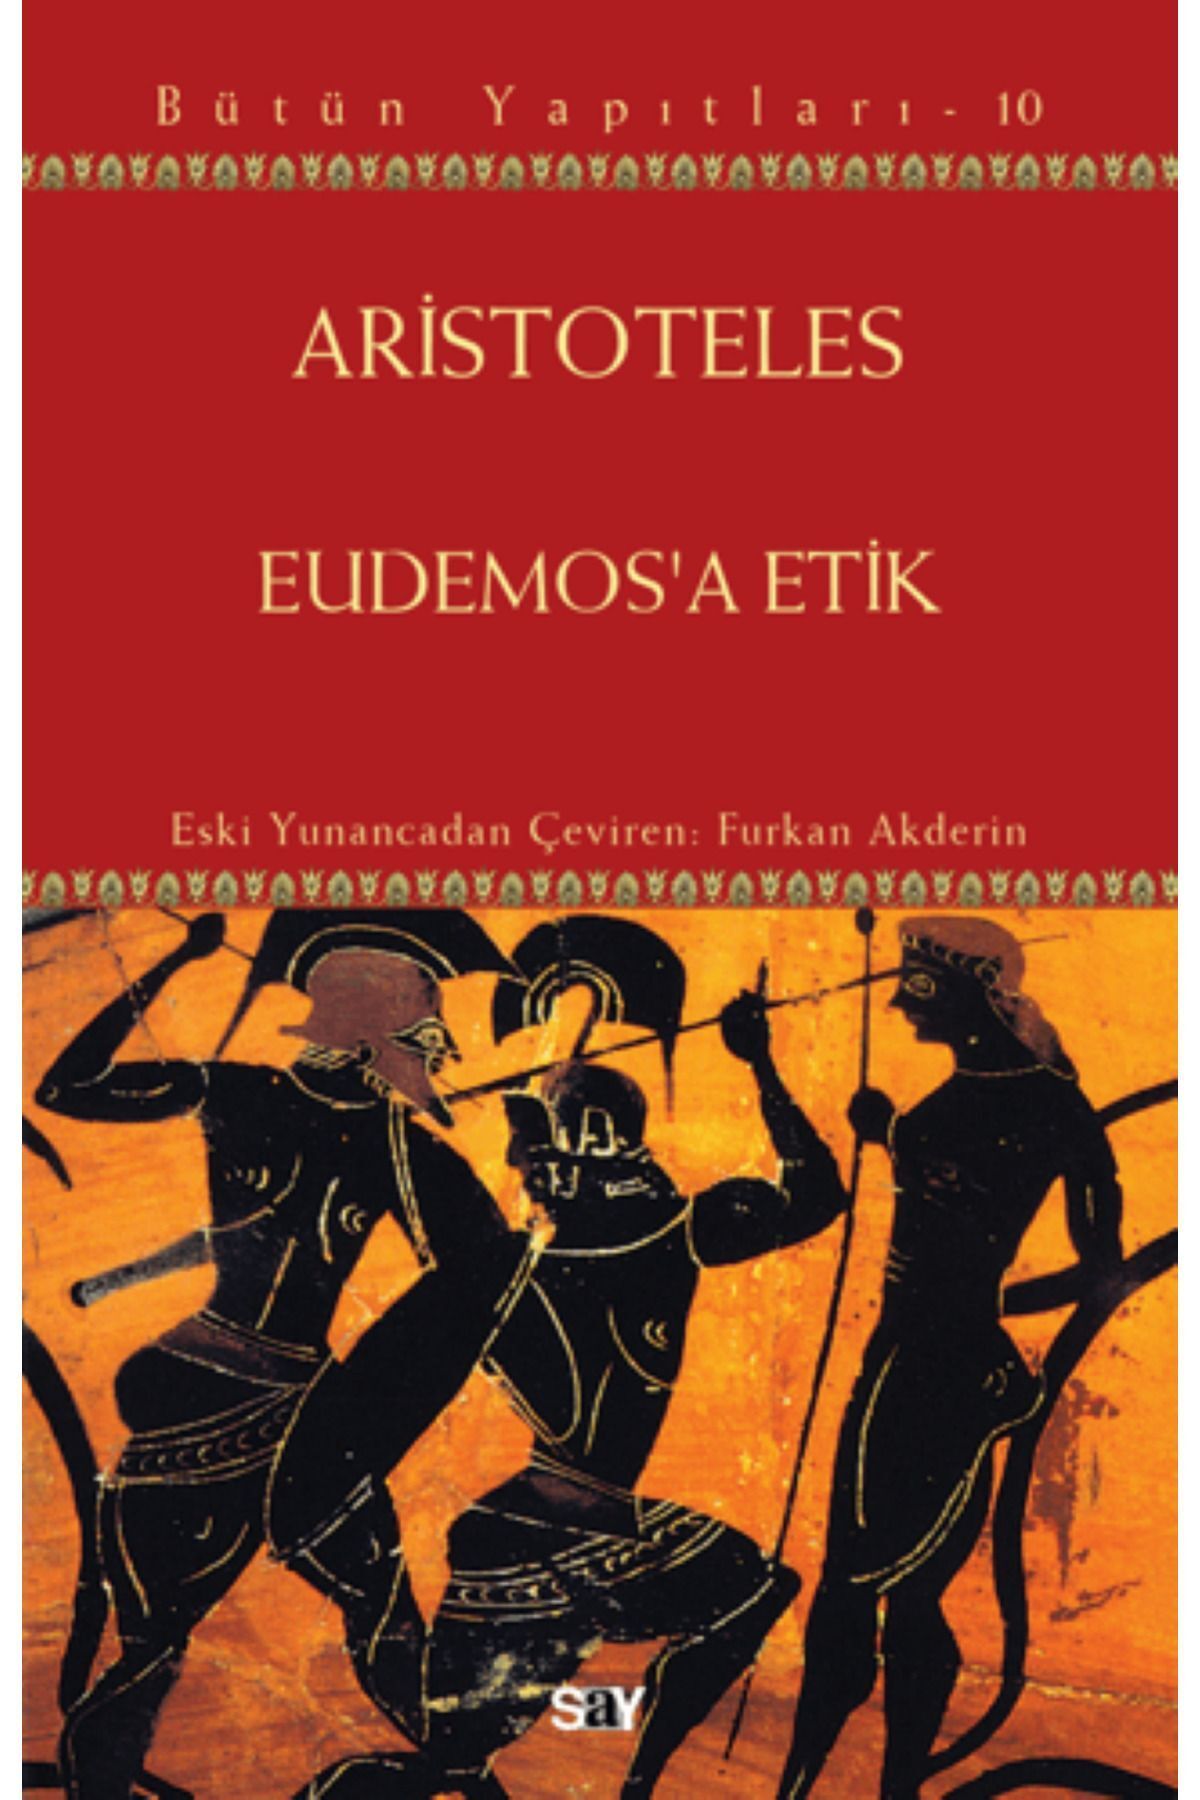 Say Yayınları Eudemos'a Etik - Bütün Yapıtları 10